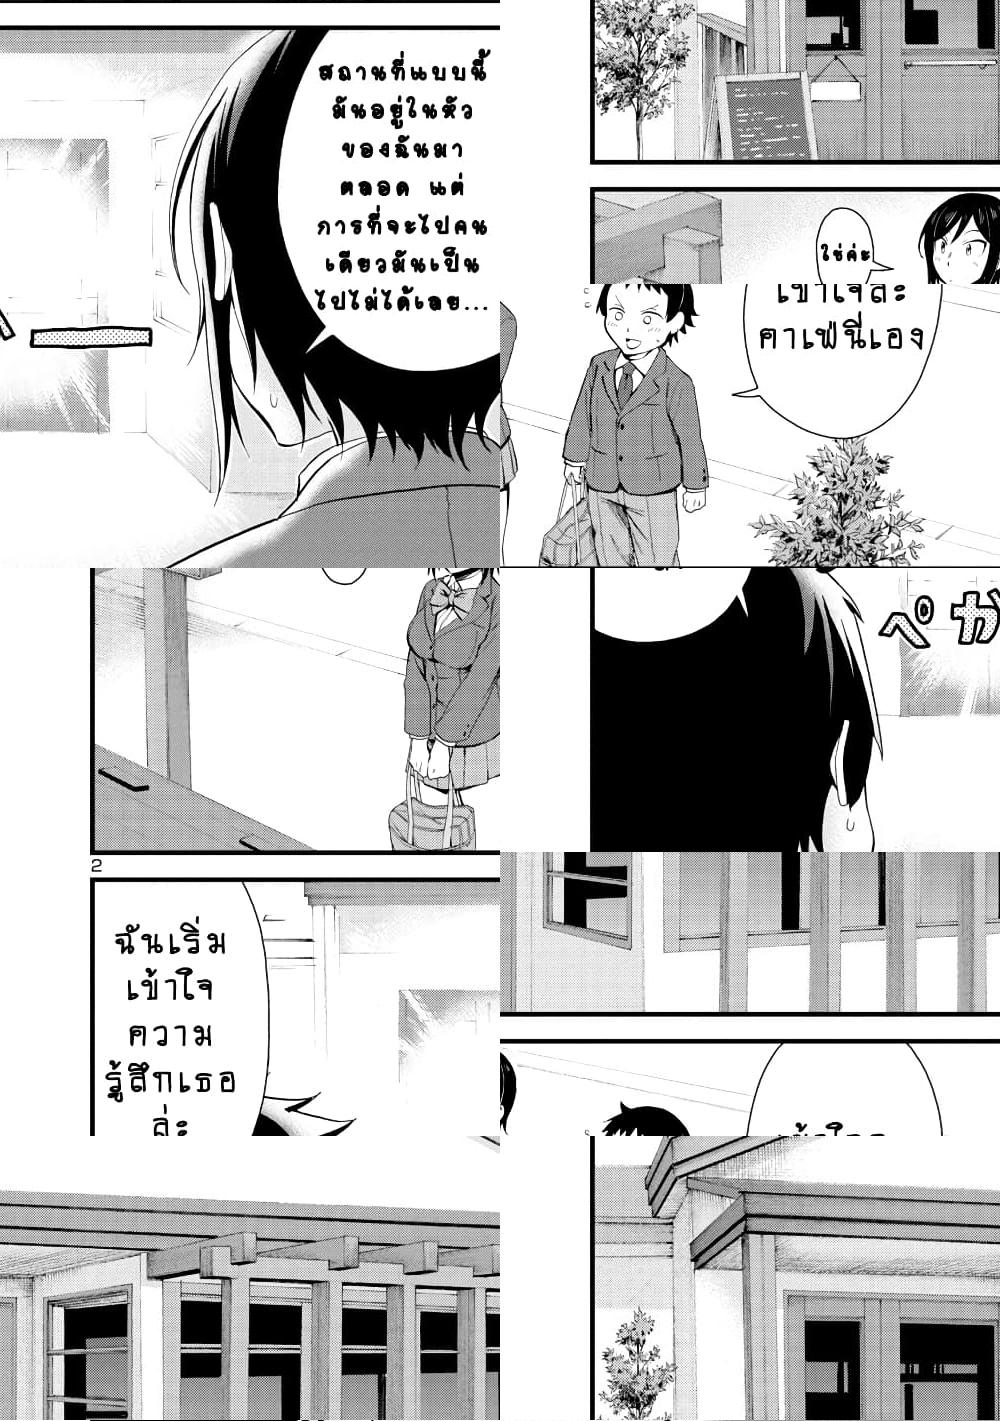 Hitomi-chan Is Shy With Strangers วันๆของน้องฮิโตมิก็เป็นแบบนี้แหล่ะ - 17 - 2